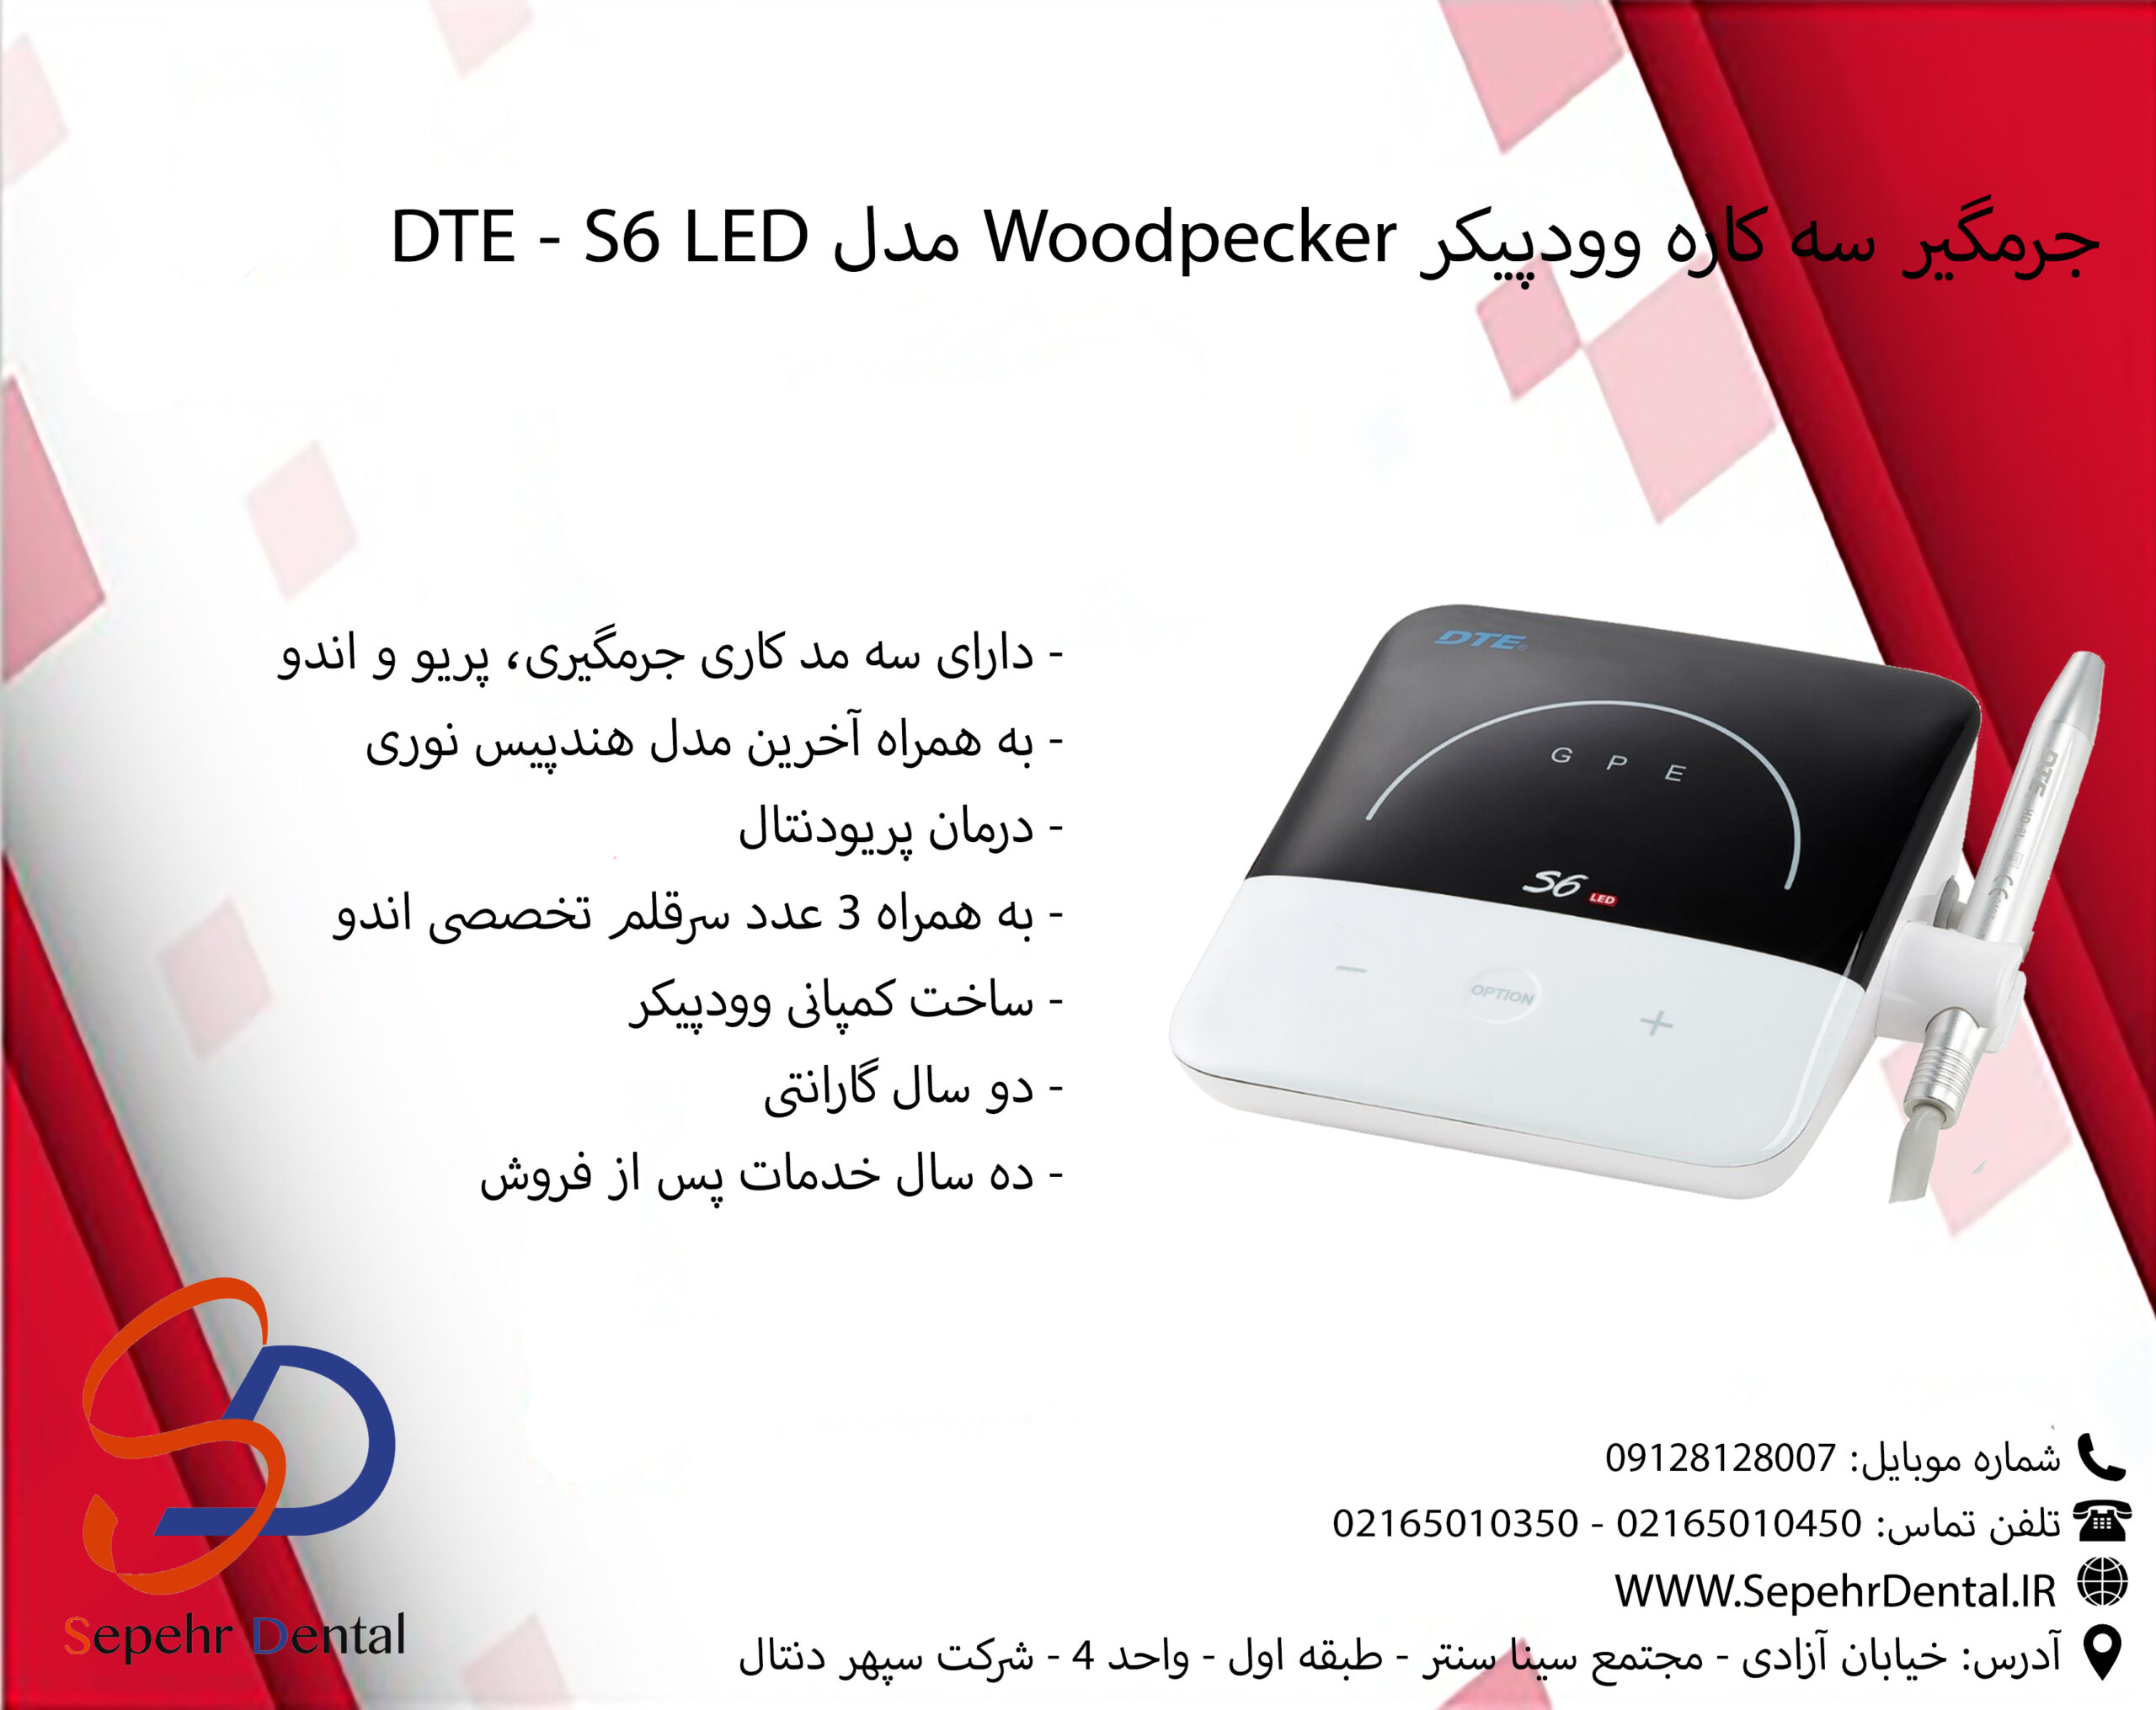 جرمگیر سه کاره وودپیکر Woodpecker مدل DTE - S6 LED